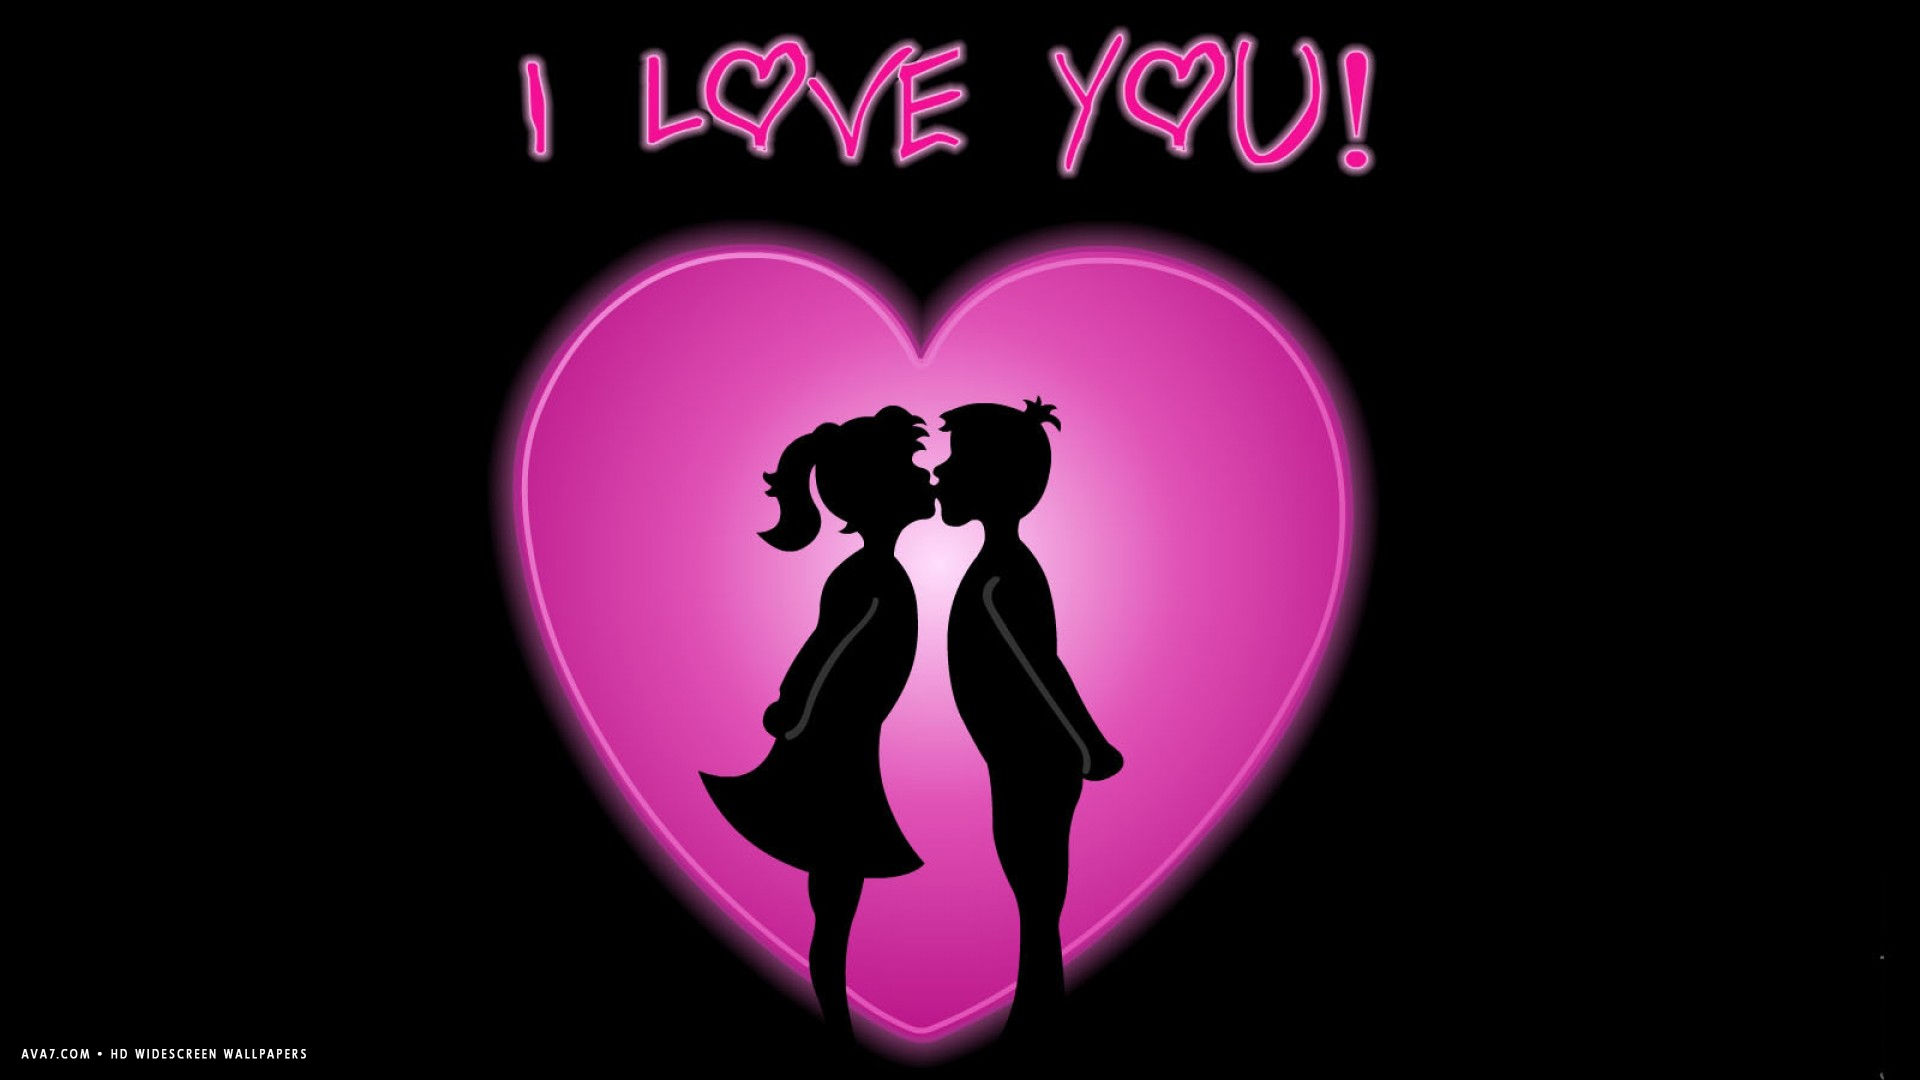 ich liebe dich wallpaper mit paar,liebe,text,valentinstag,romantik,silhouette